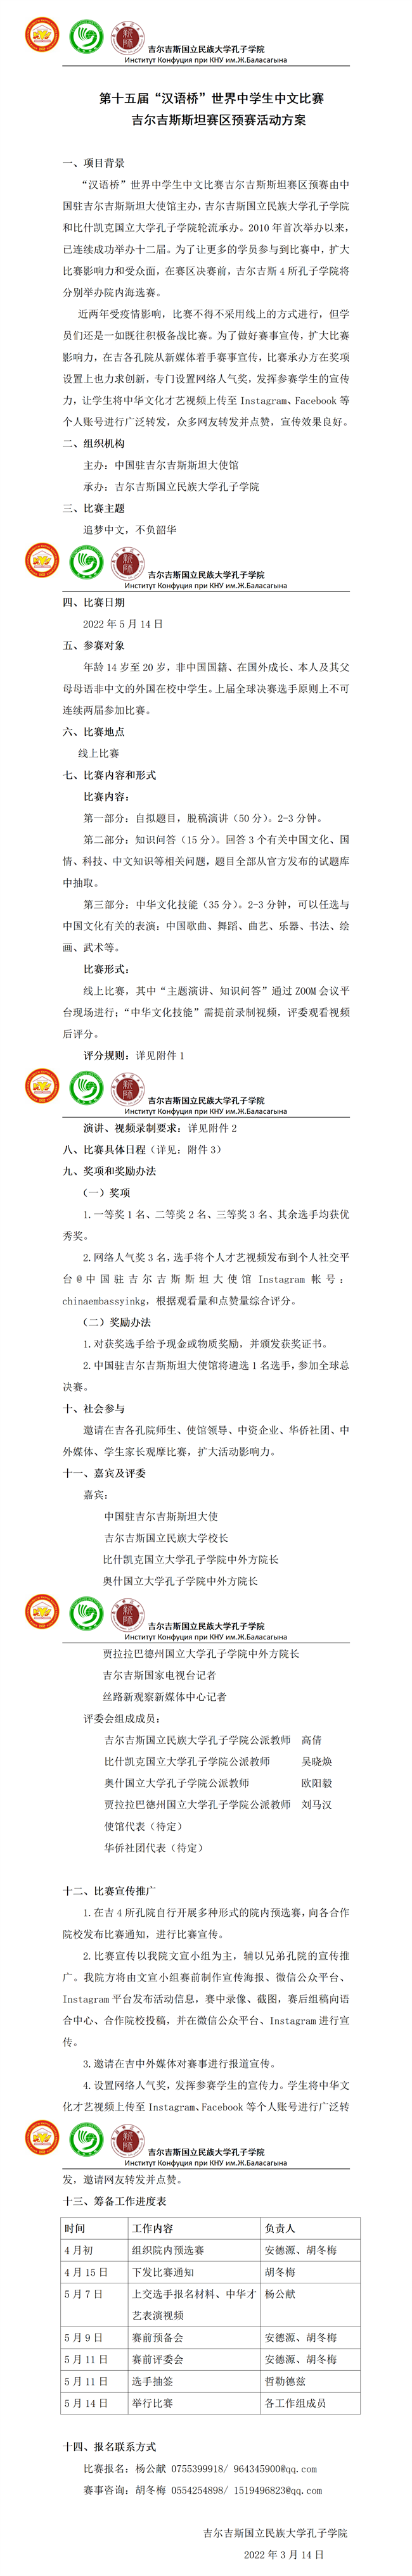 第十五届“汉语桥”世界中学生中文比赛吉尔吉斯赛区预赛方案_01.png